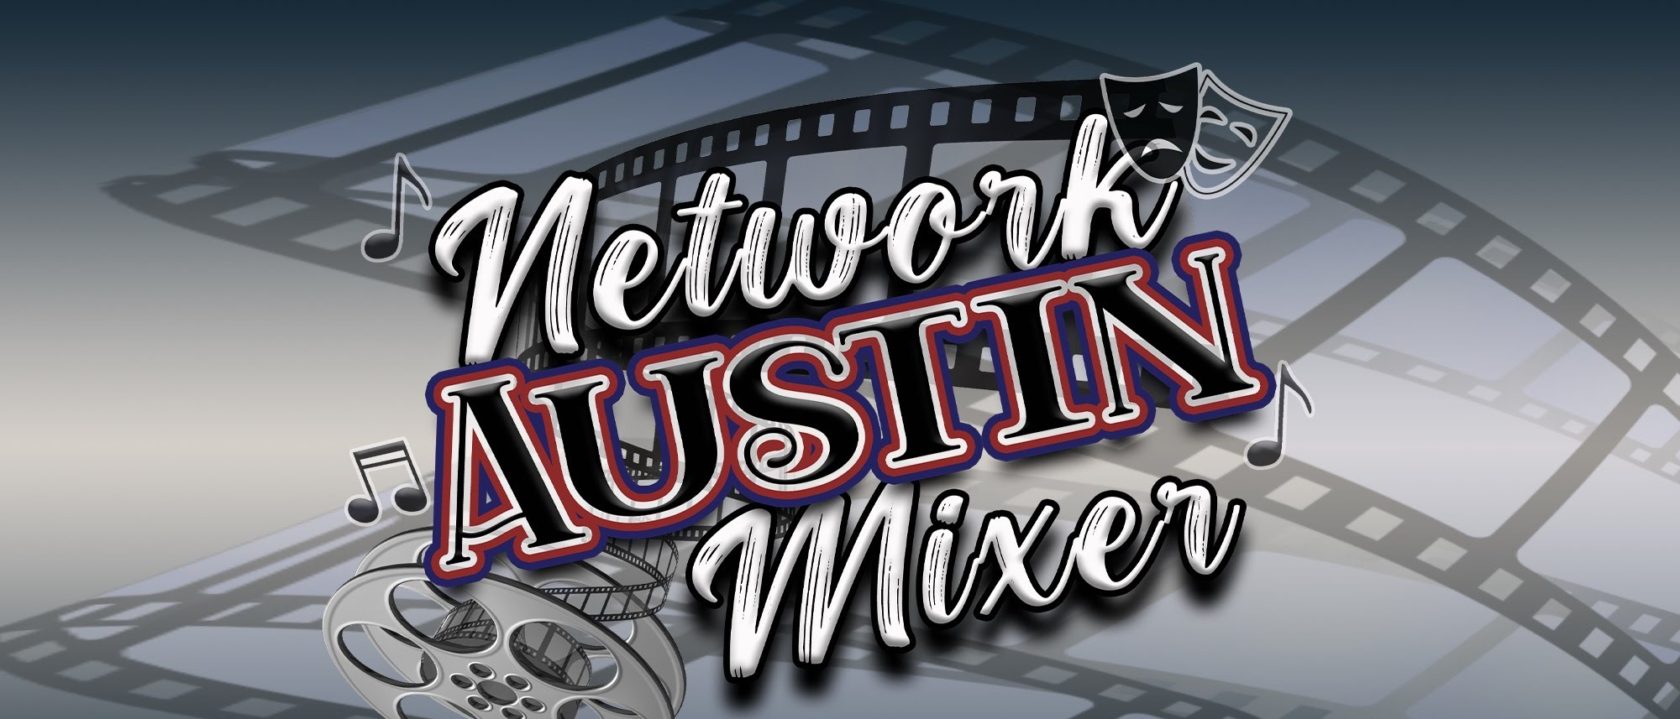 Network Austin Mixer